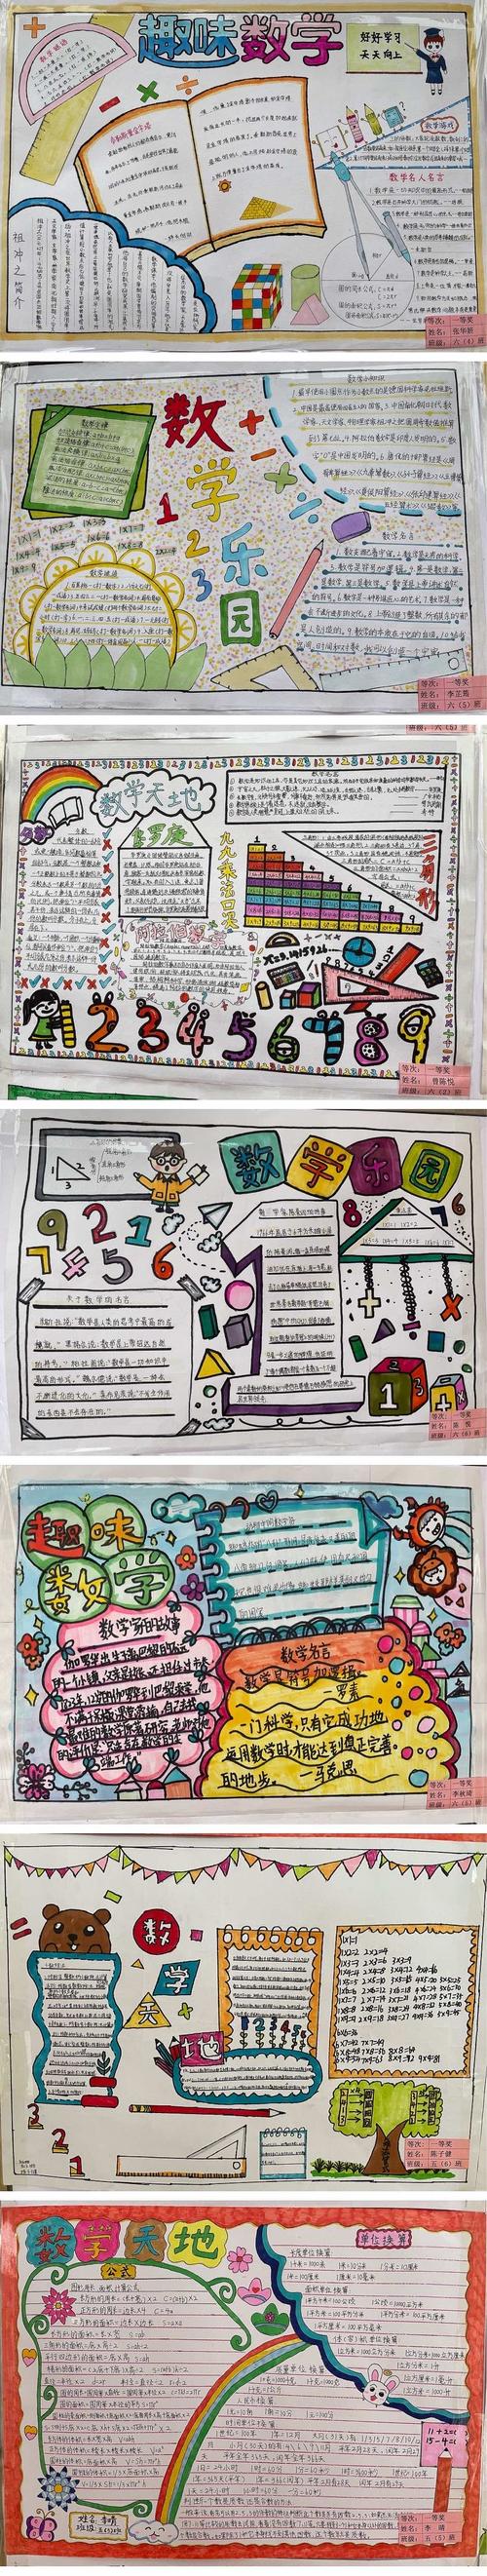 数学趣题脑筋急转弯数学日记等汇编在自己的手抄报中色彩丰富图文